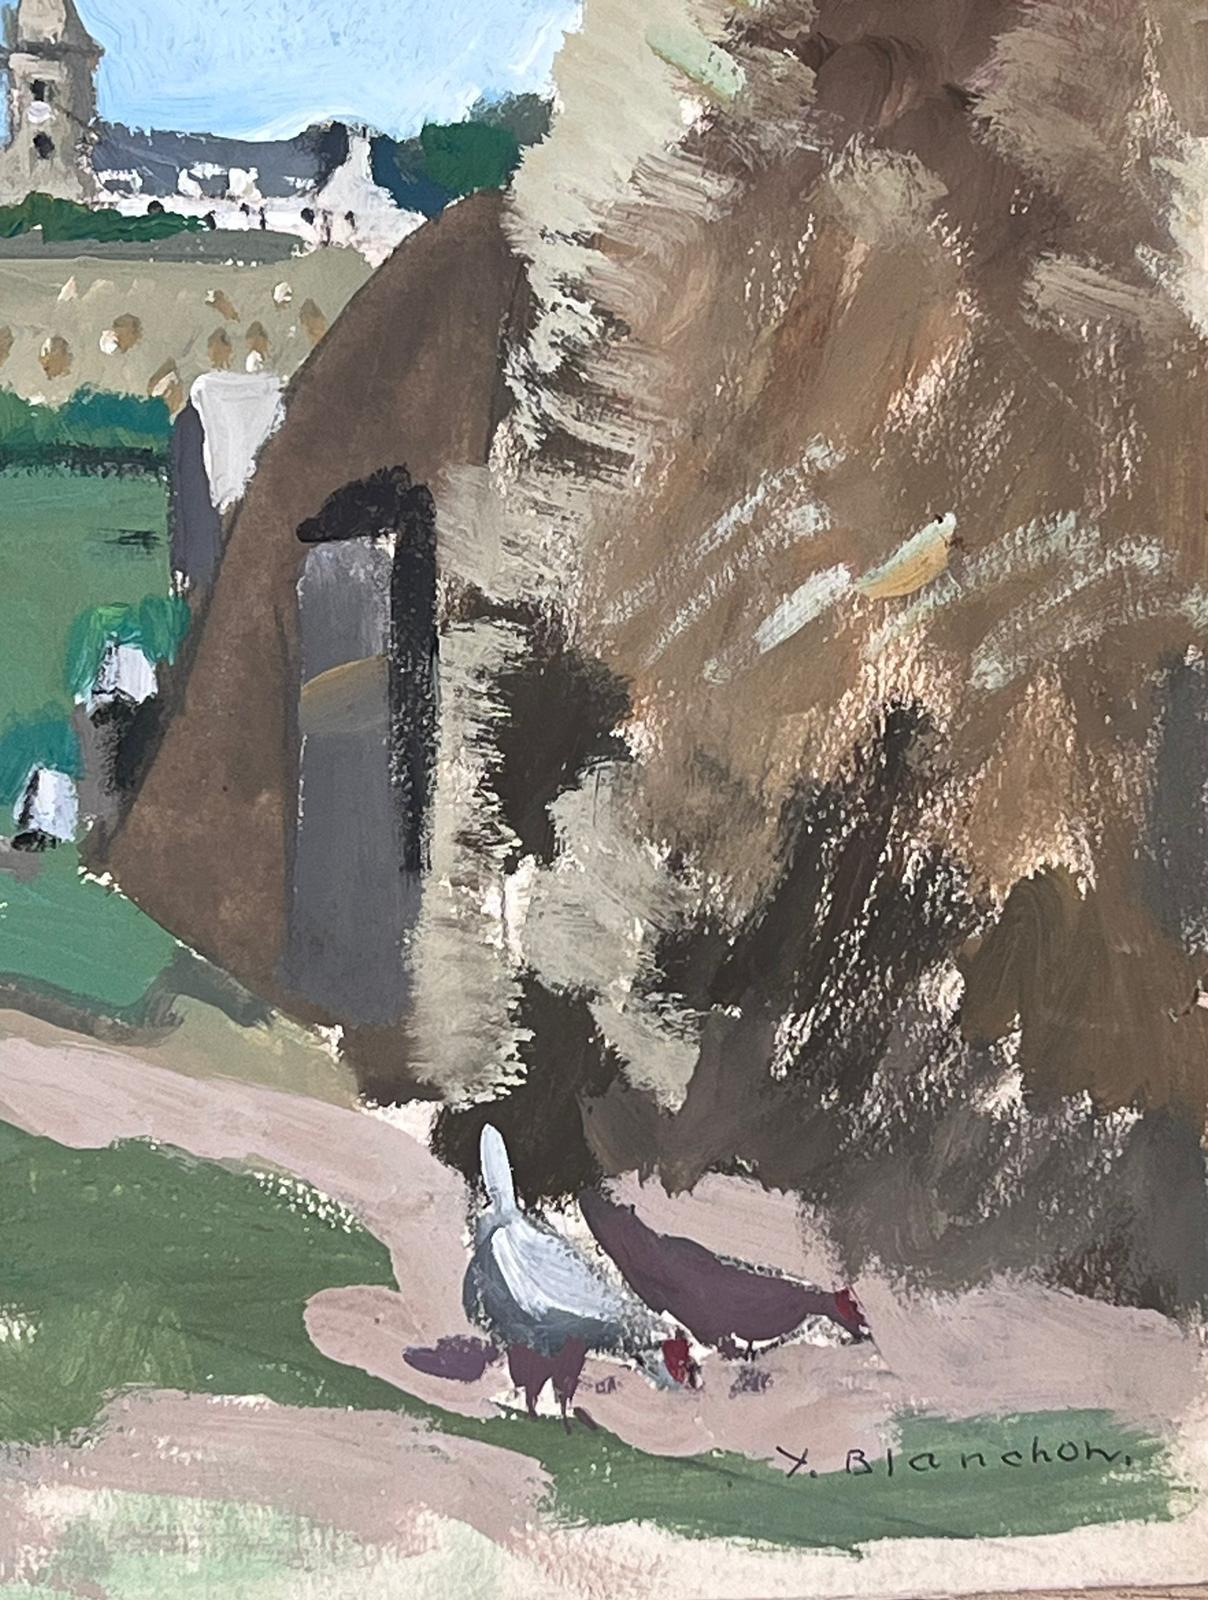 Innenhof des Bauernhofs 
von Y. Blanchon, französischer Künstler des Impressionismus der 1950er Jahre
signierte Gouache auf Künstlerpapier, ungerahmt
Gemälde: 12 x 16,5 Zoll
Provenienz: aus einer großen Privatsammlung dieses Künstlers in